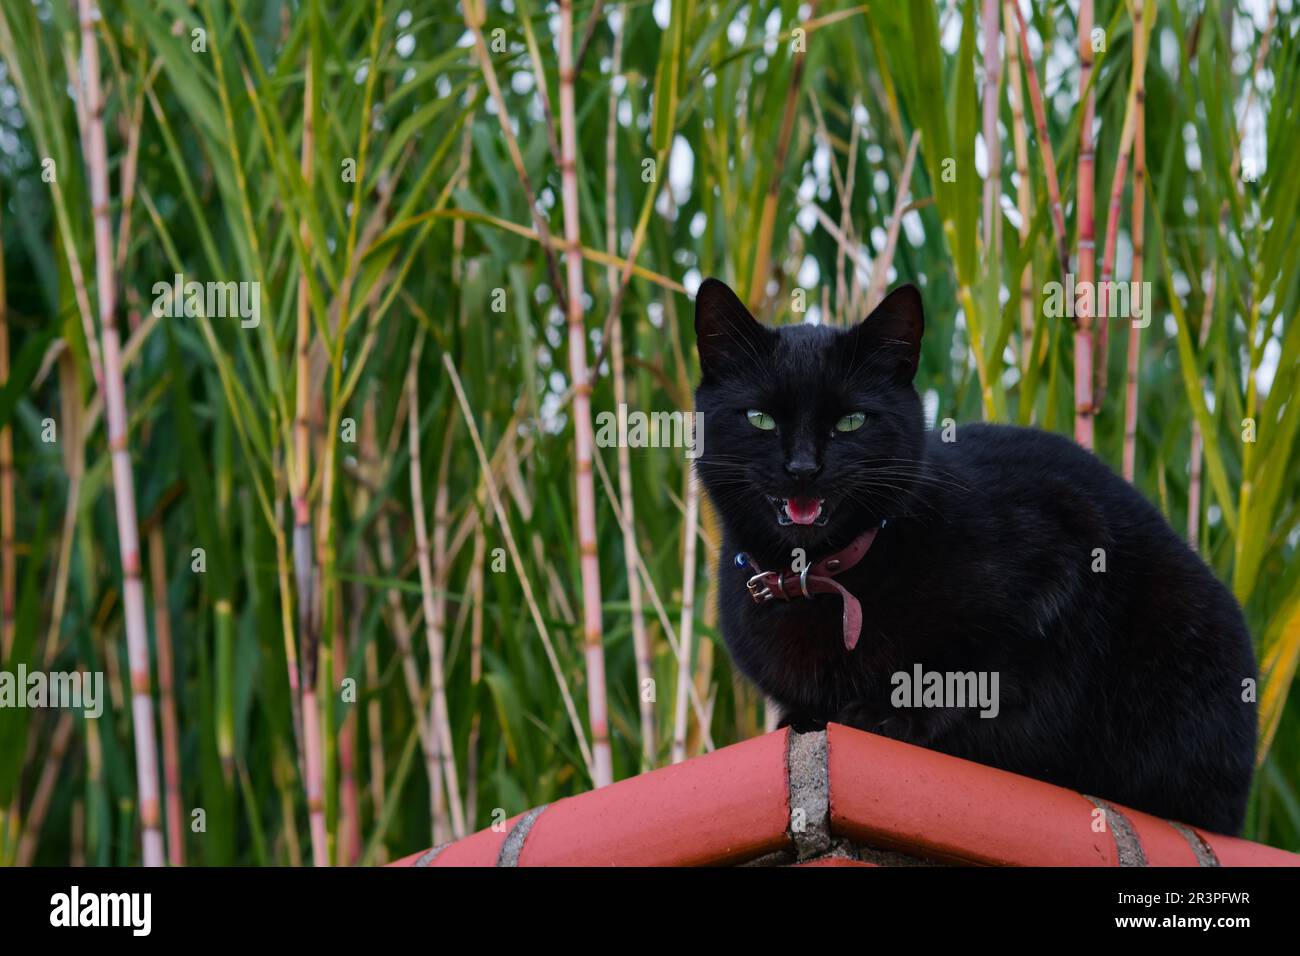 Gatto domestico nero siede su una recinzione e meows, guarda nella macchina fotografica. Primo piano di un gattino domestico sullo sfondo di una giovane canna da zucchero, focu selettivo Foto Stock